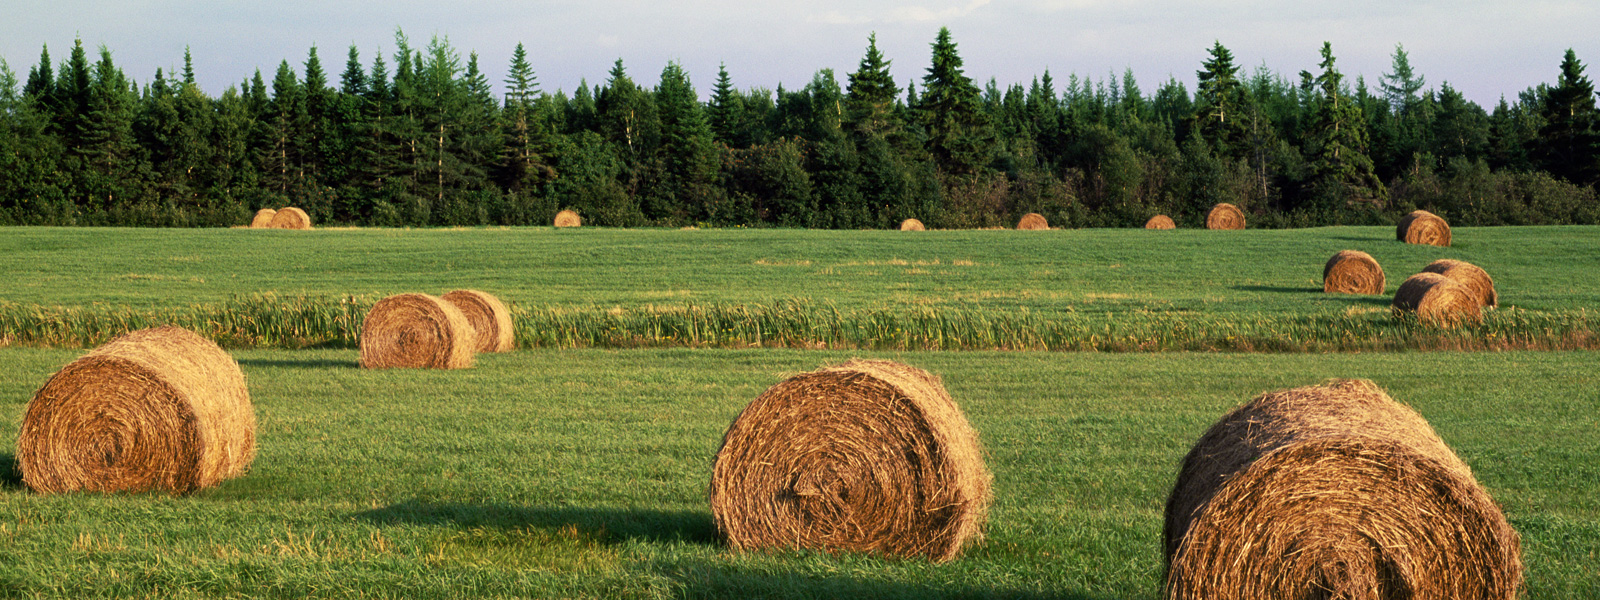 Field of hay bales